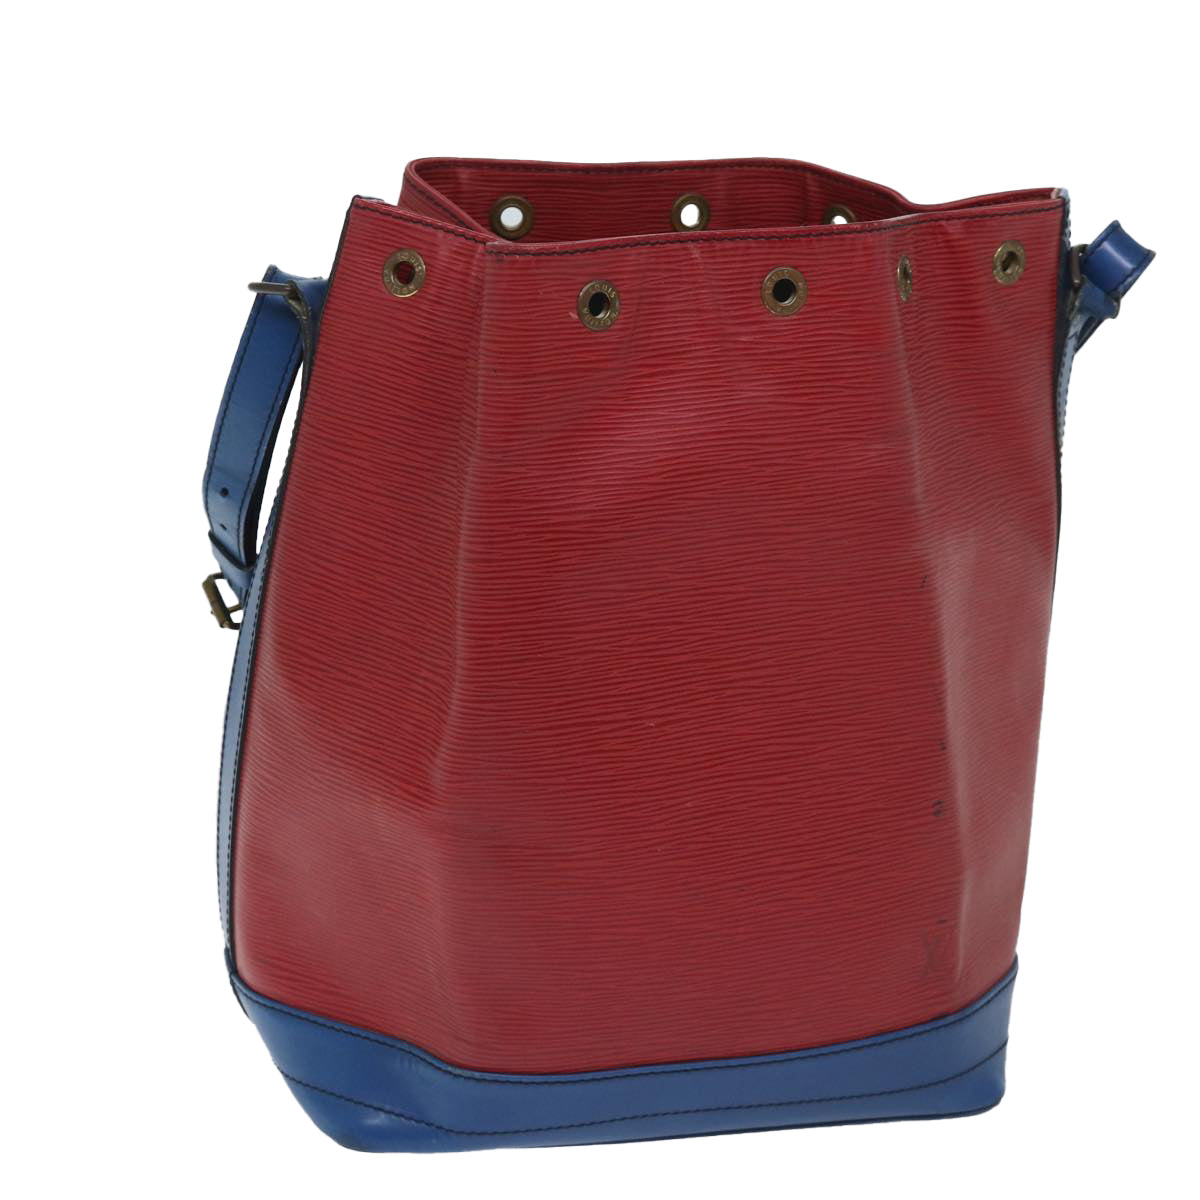 LOUIS VUITTON Epi Noe Shoulder Bag Bicolor Red Blue M44084 LV Auth bs13230